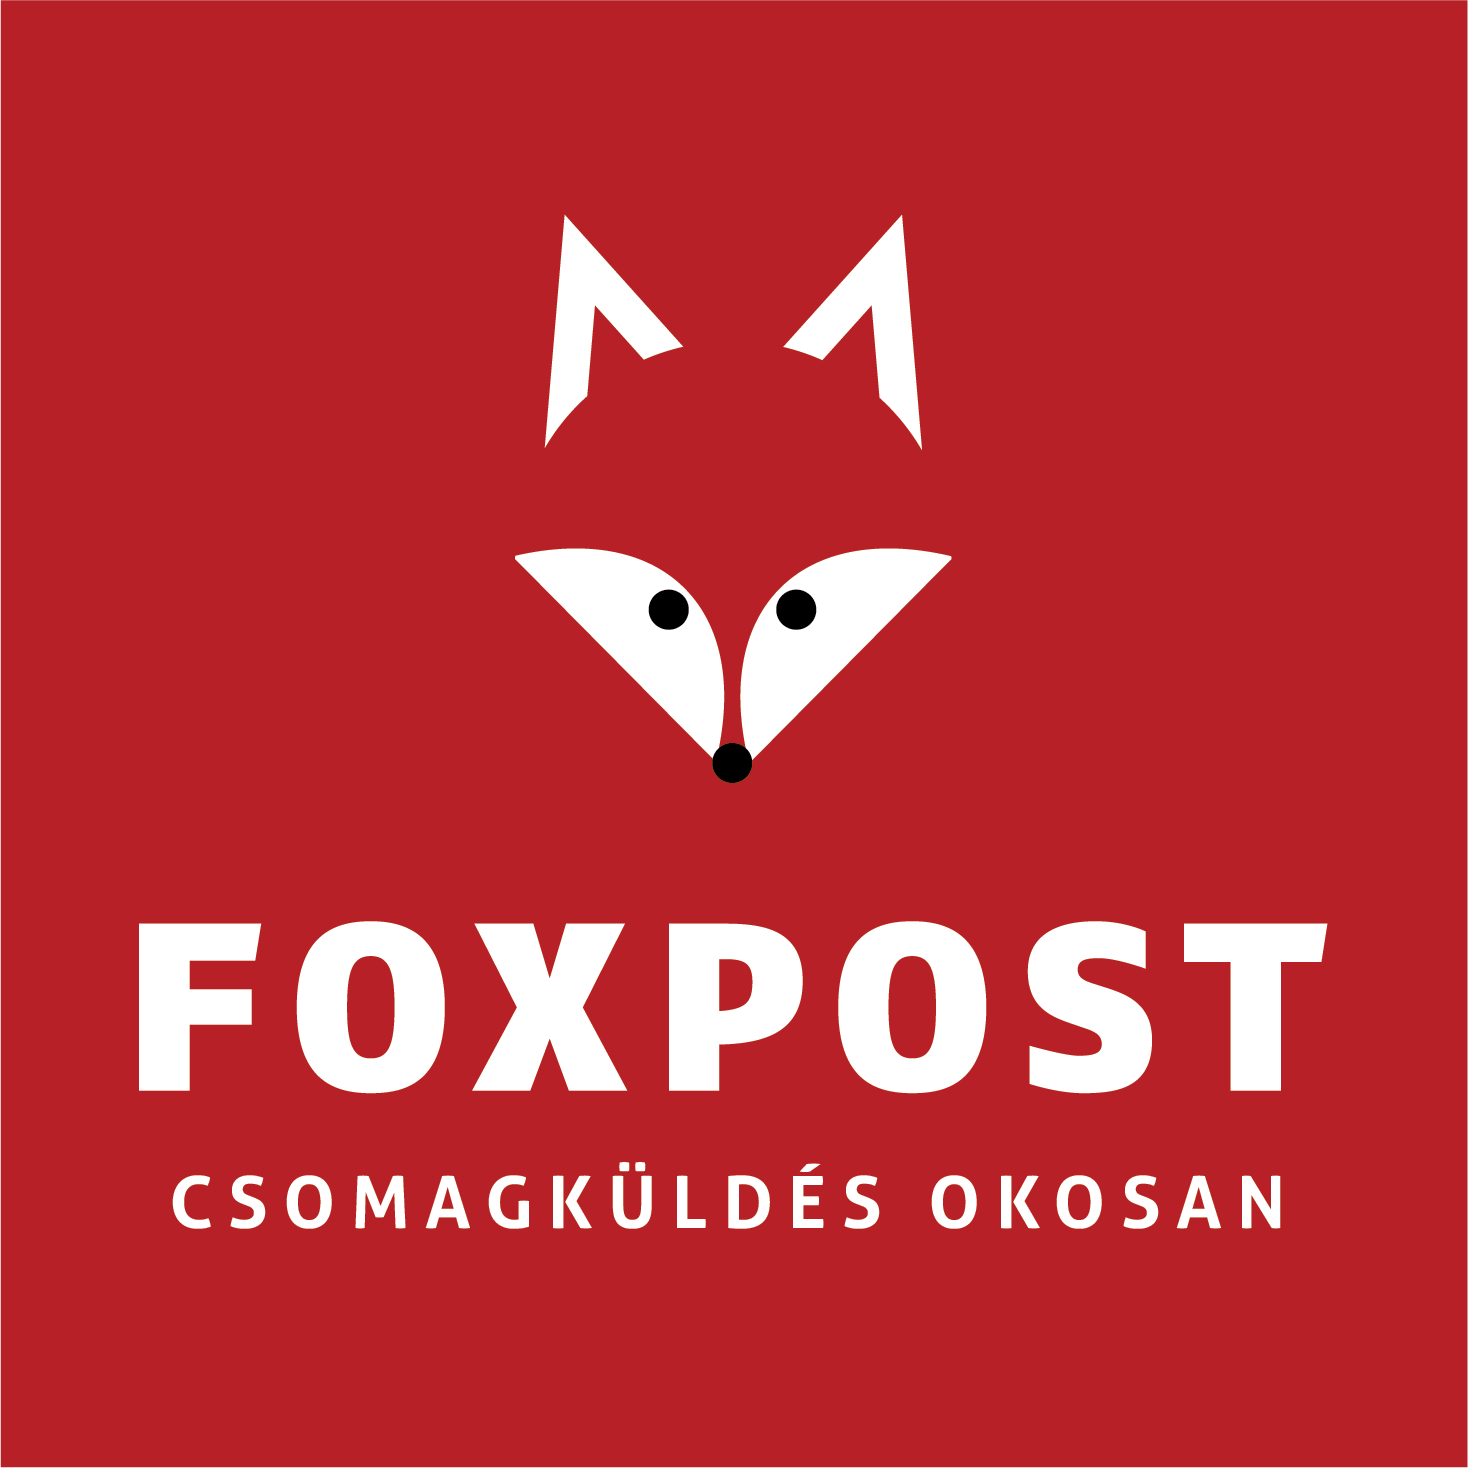 foxpost - mirunska.com